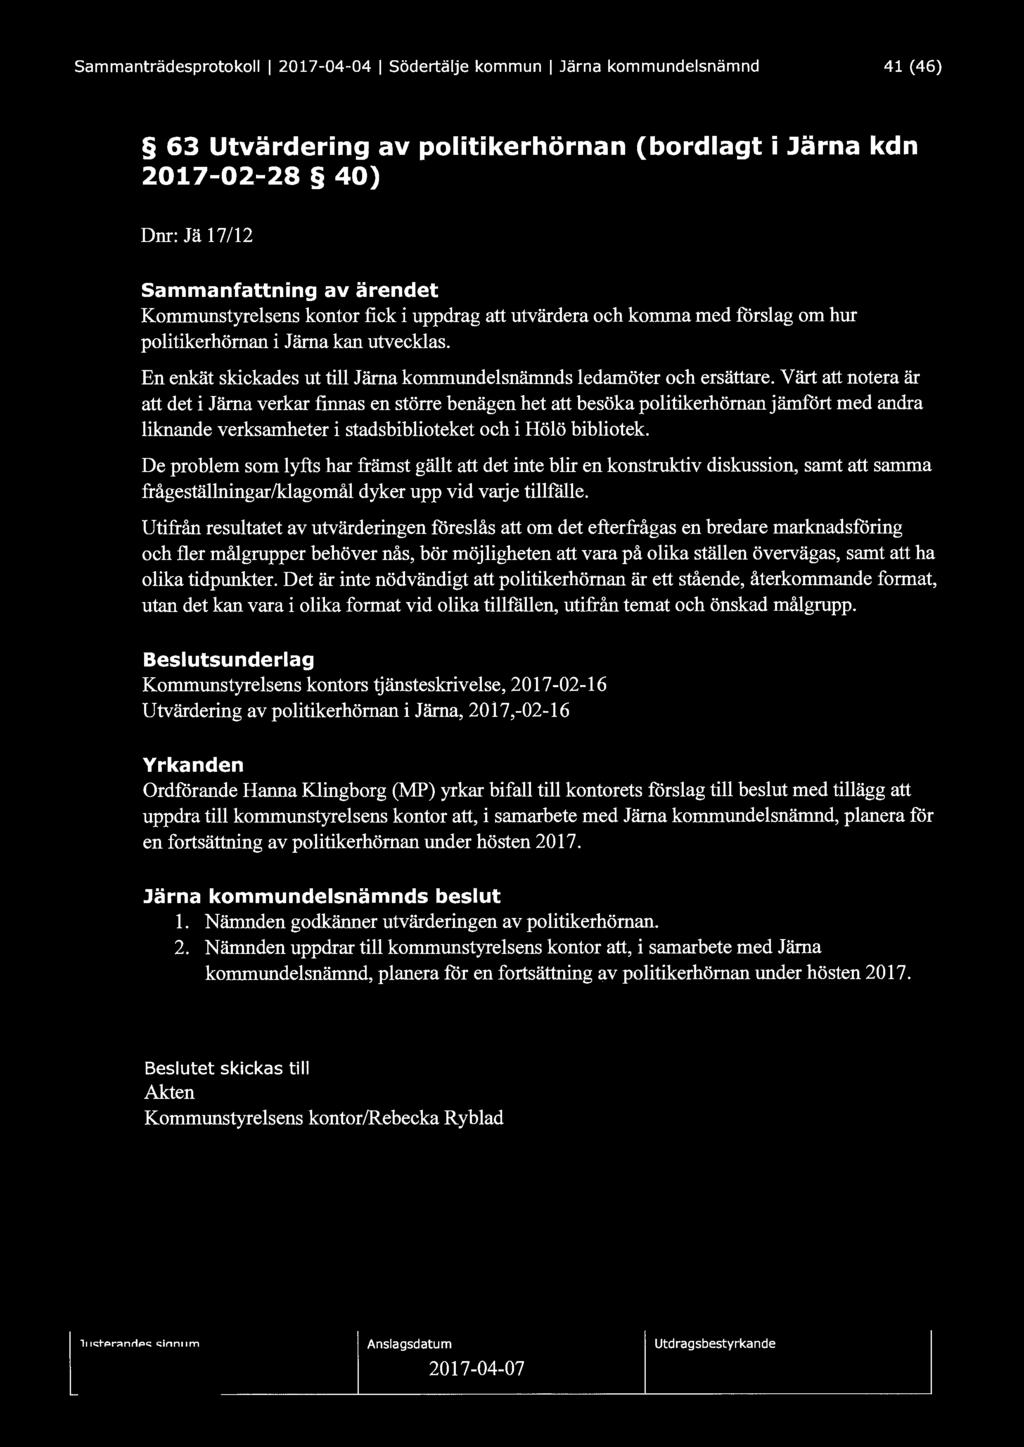 Sammanträdesprotokoll l 2017-04-04 1 Södertälje kommun 1 Järna kommundelsnämnd 41 (46) 63 Utvärdering av politikerhörnan (bordlagt i Järna kdn 2017-02-28 40) Dnr: Jä 17/12 Sammanfattning av ärendet